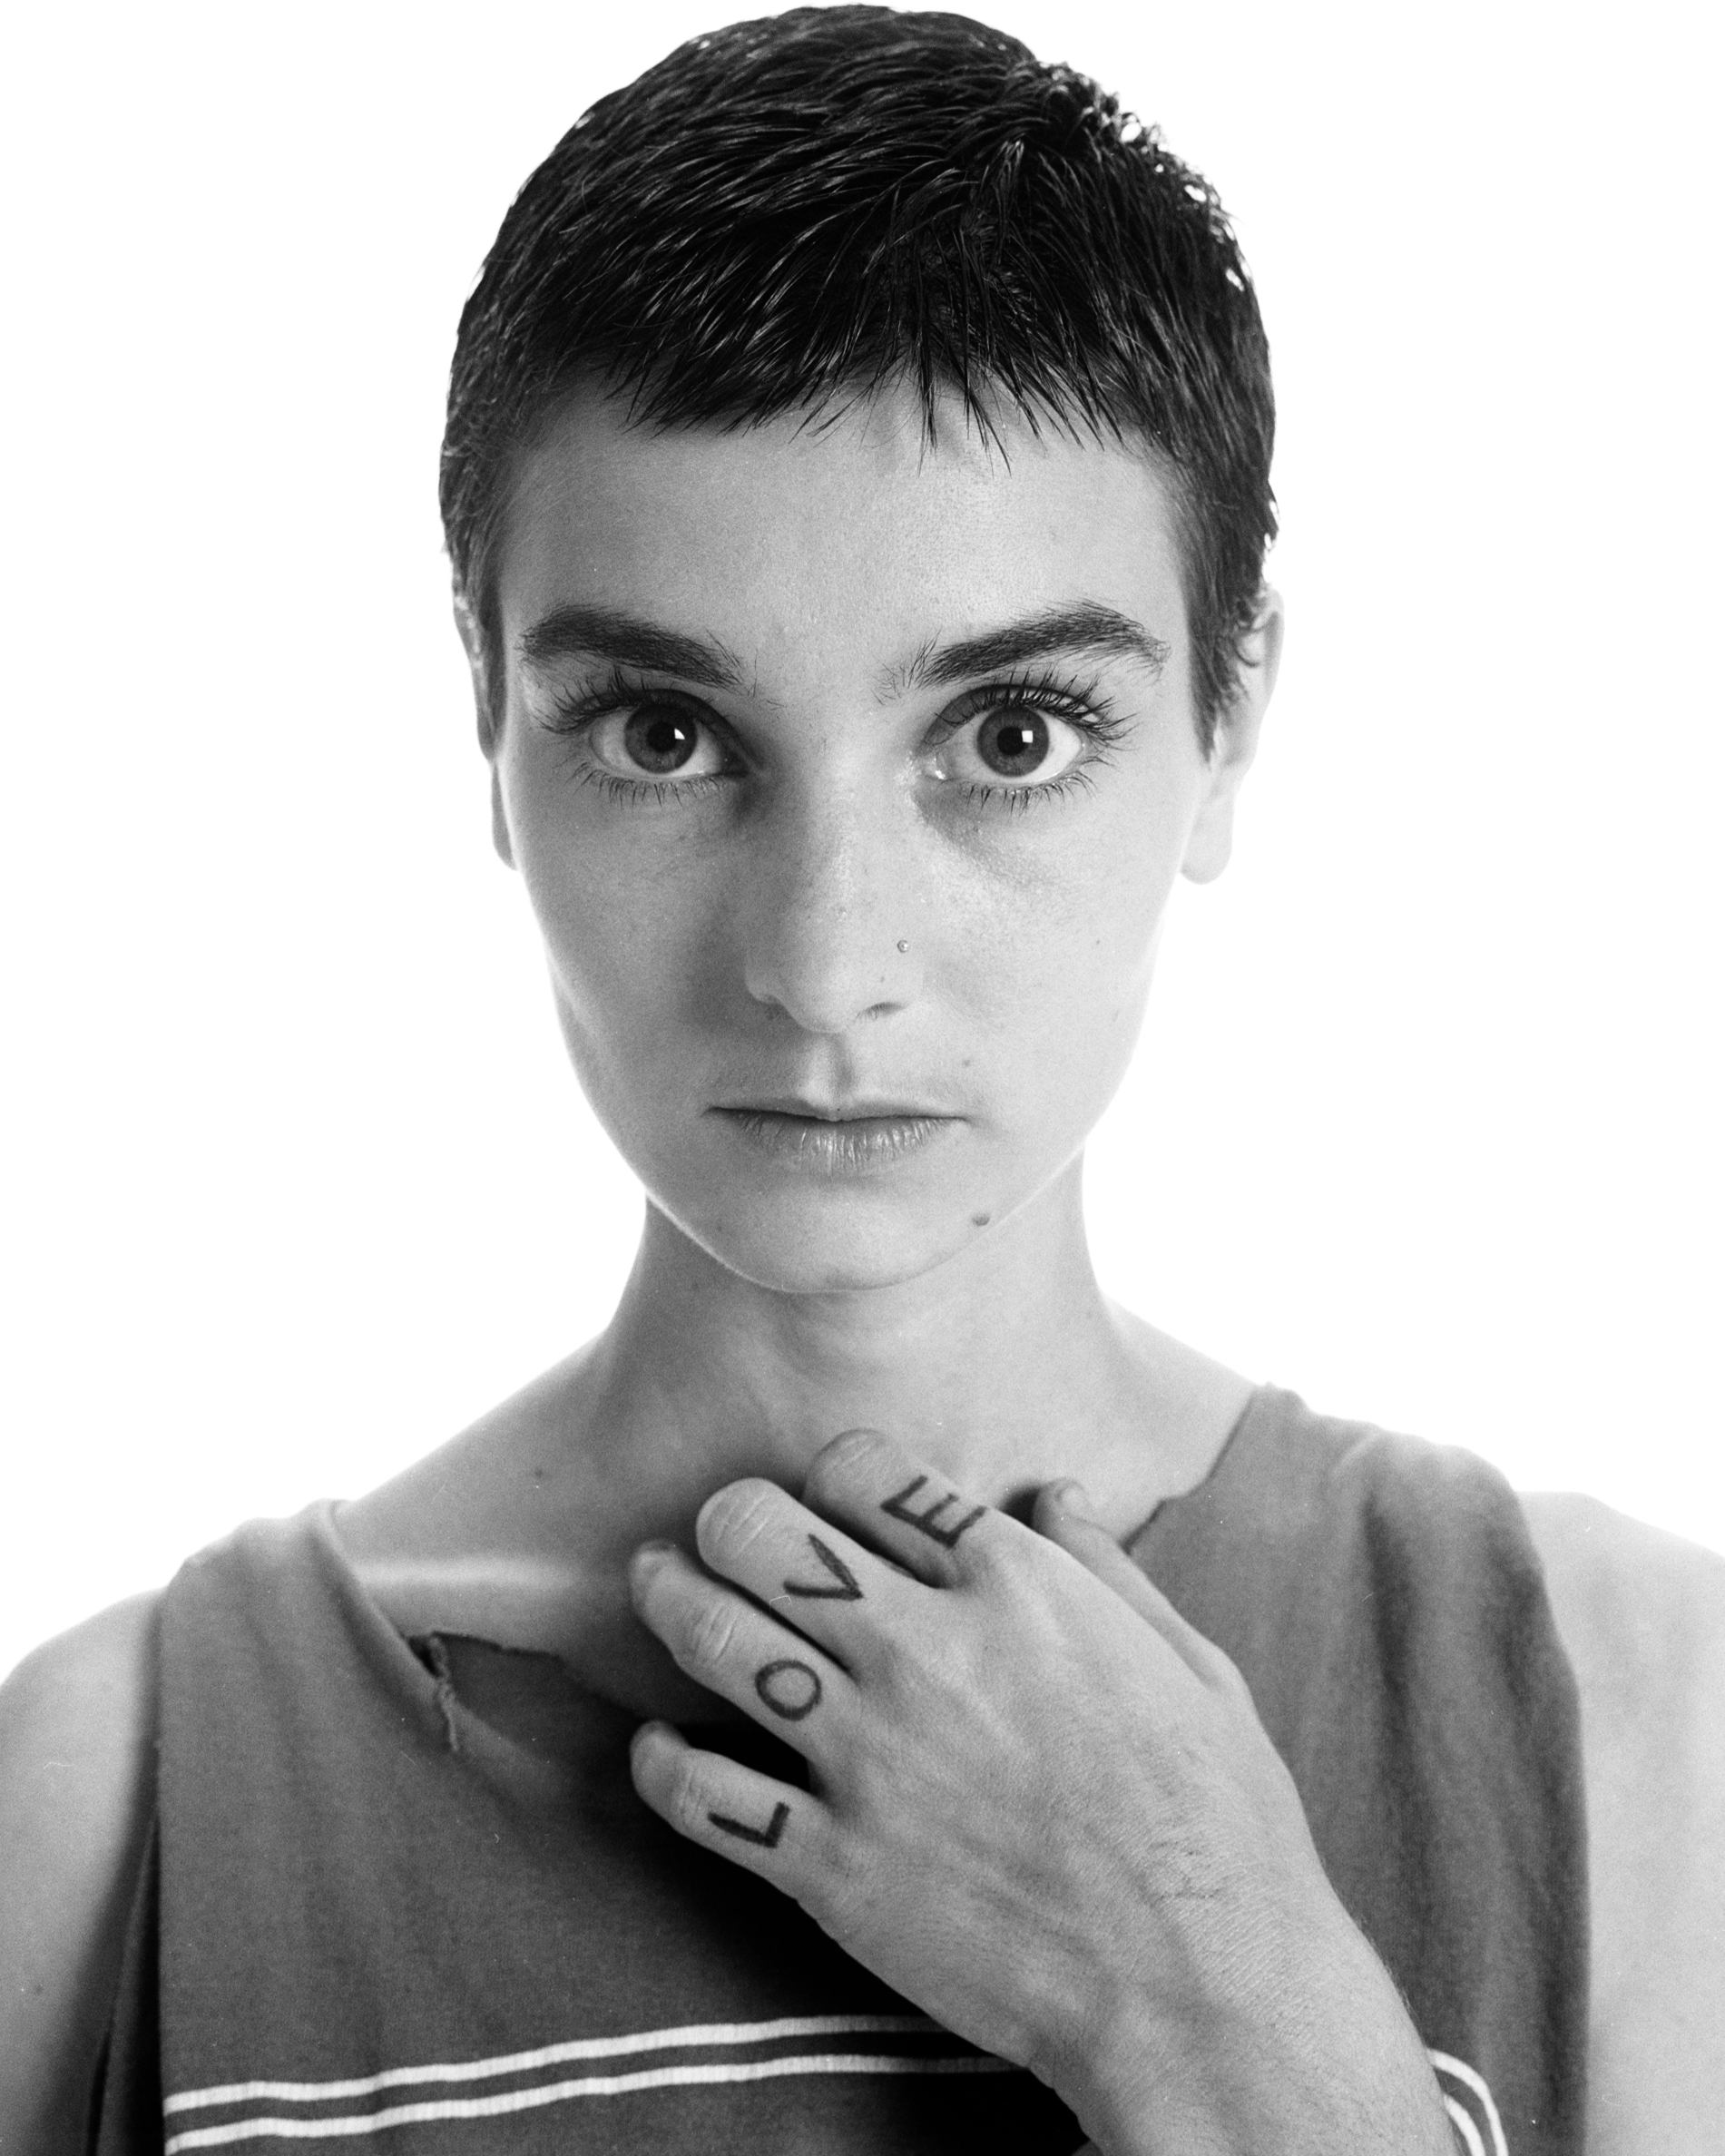 Fotografía de Sinéad O'Connor tomada en 1994. | Foto: Getty Images